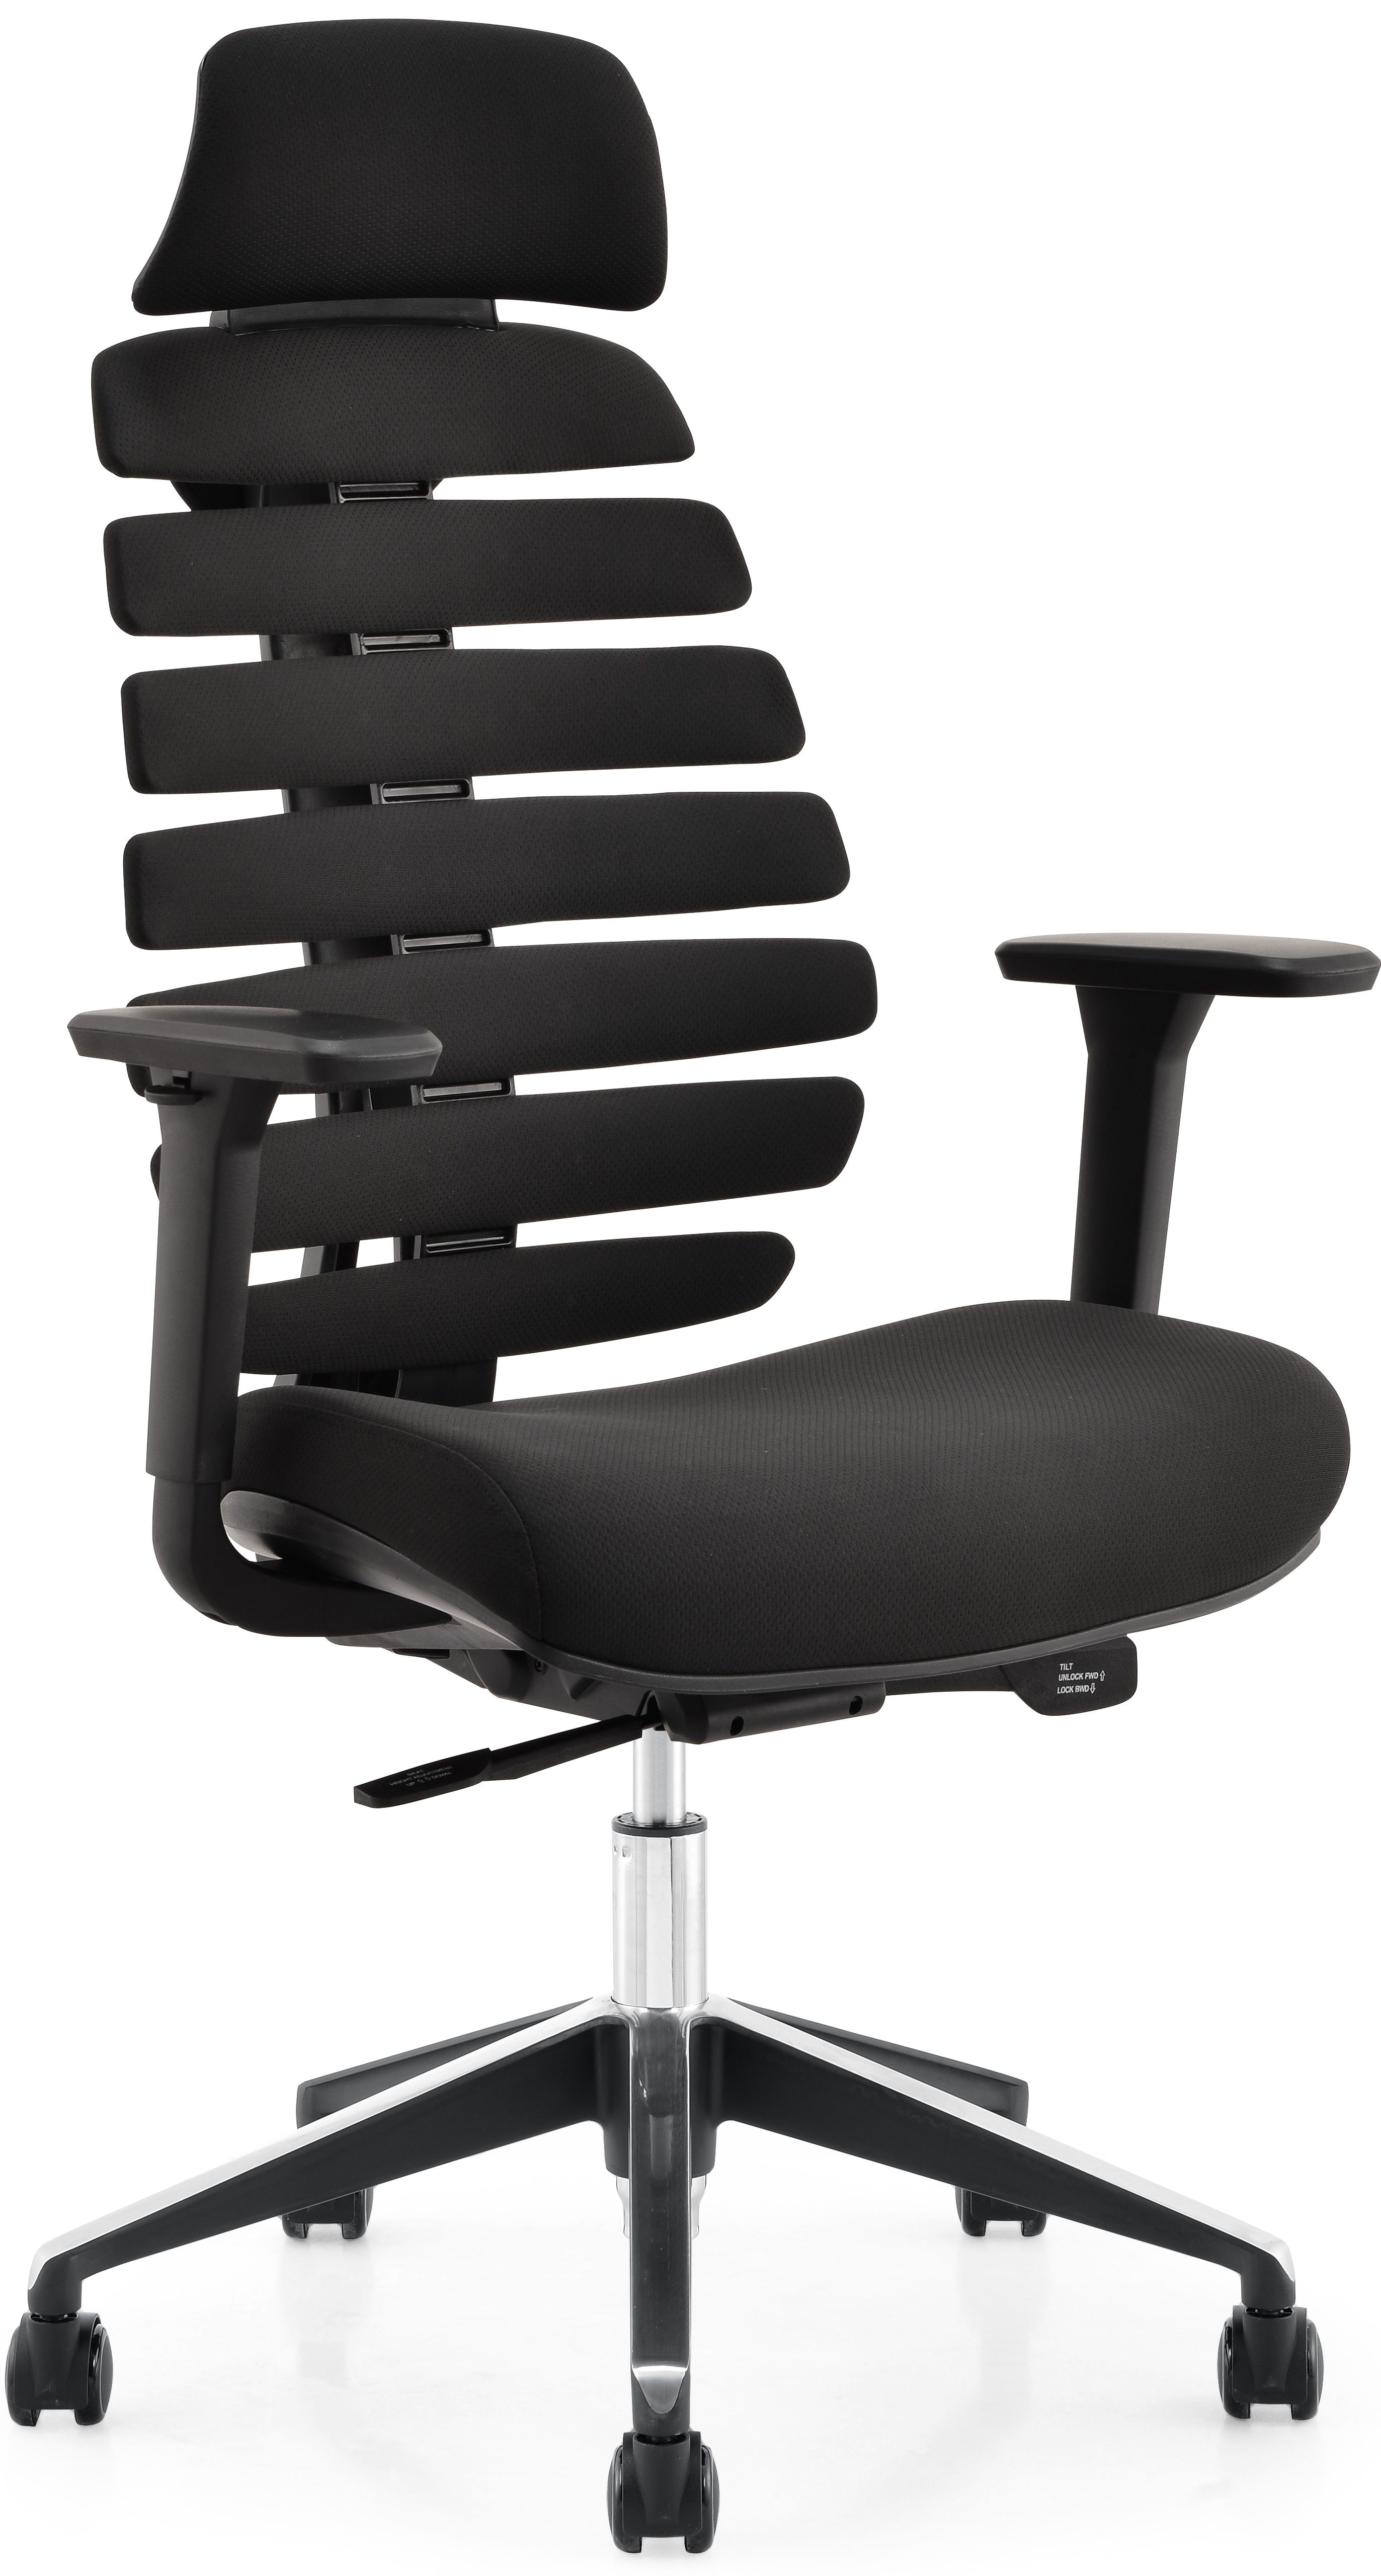 MERCURY kancelárska stolička FISH BONES PDH čierny plast, čierna 26-60